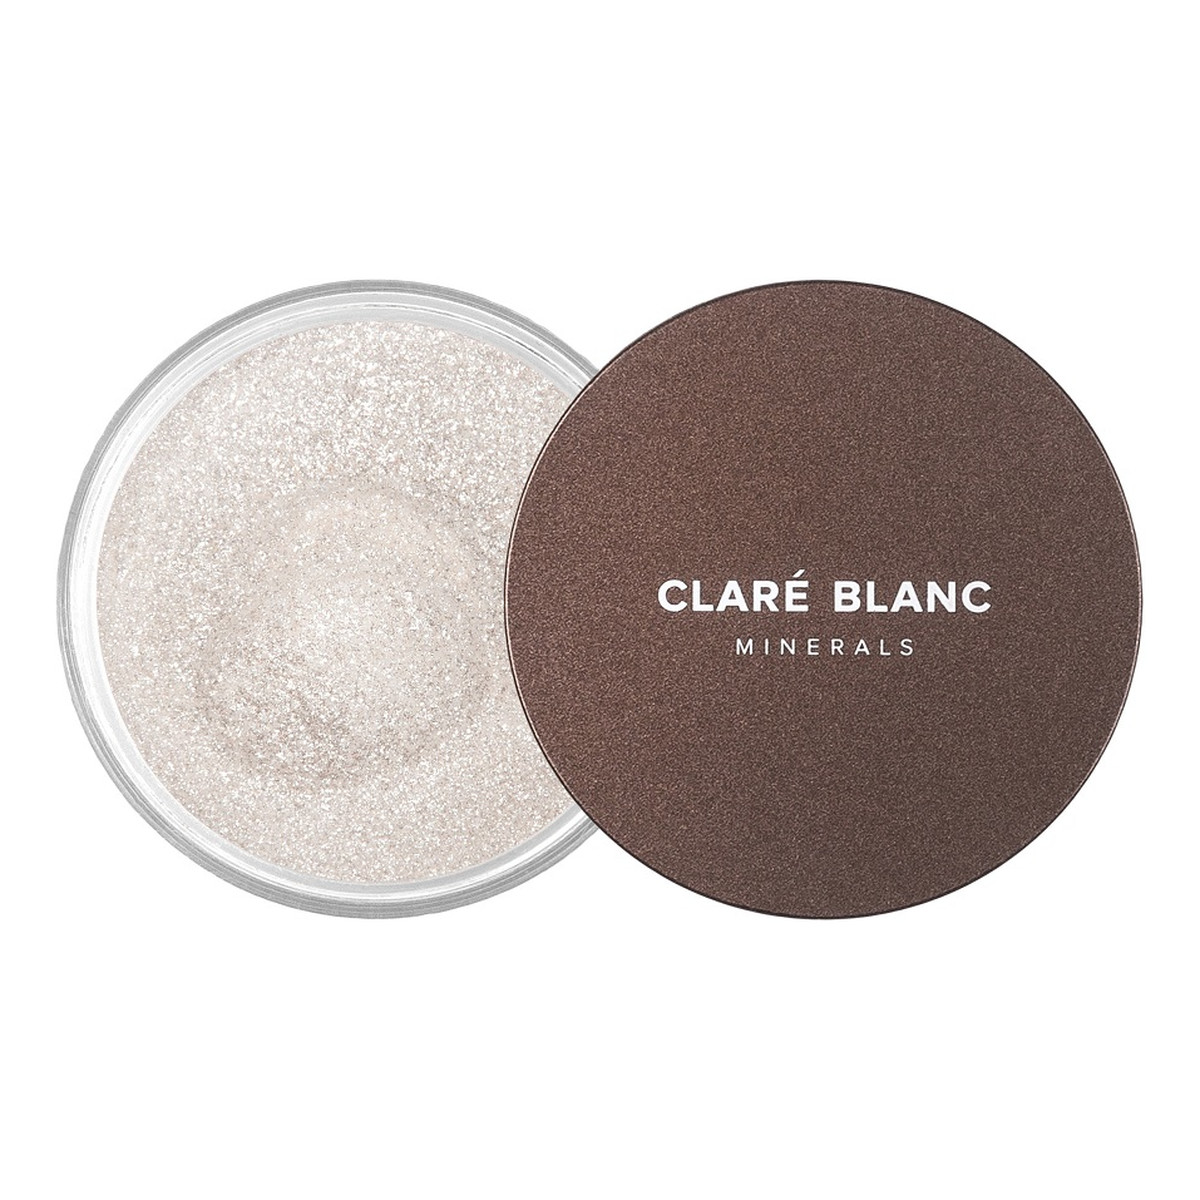 Clare Blanc Body magic dust rozświetlający puder 07 glossy skin 3g